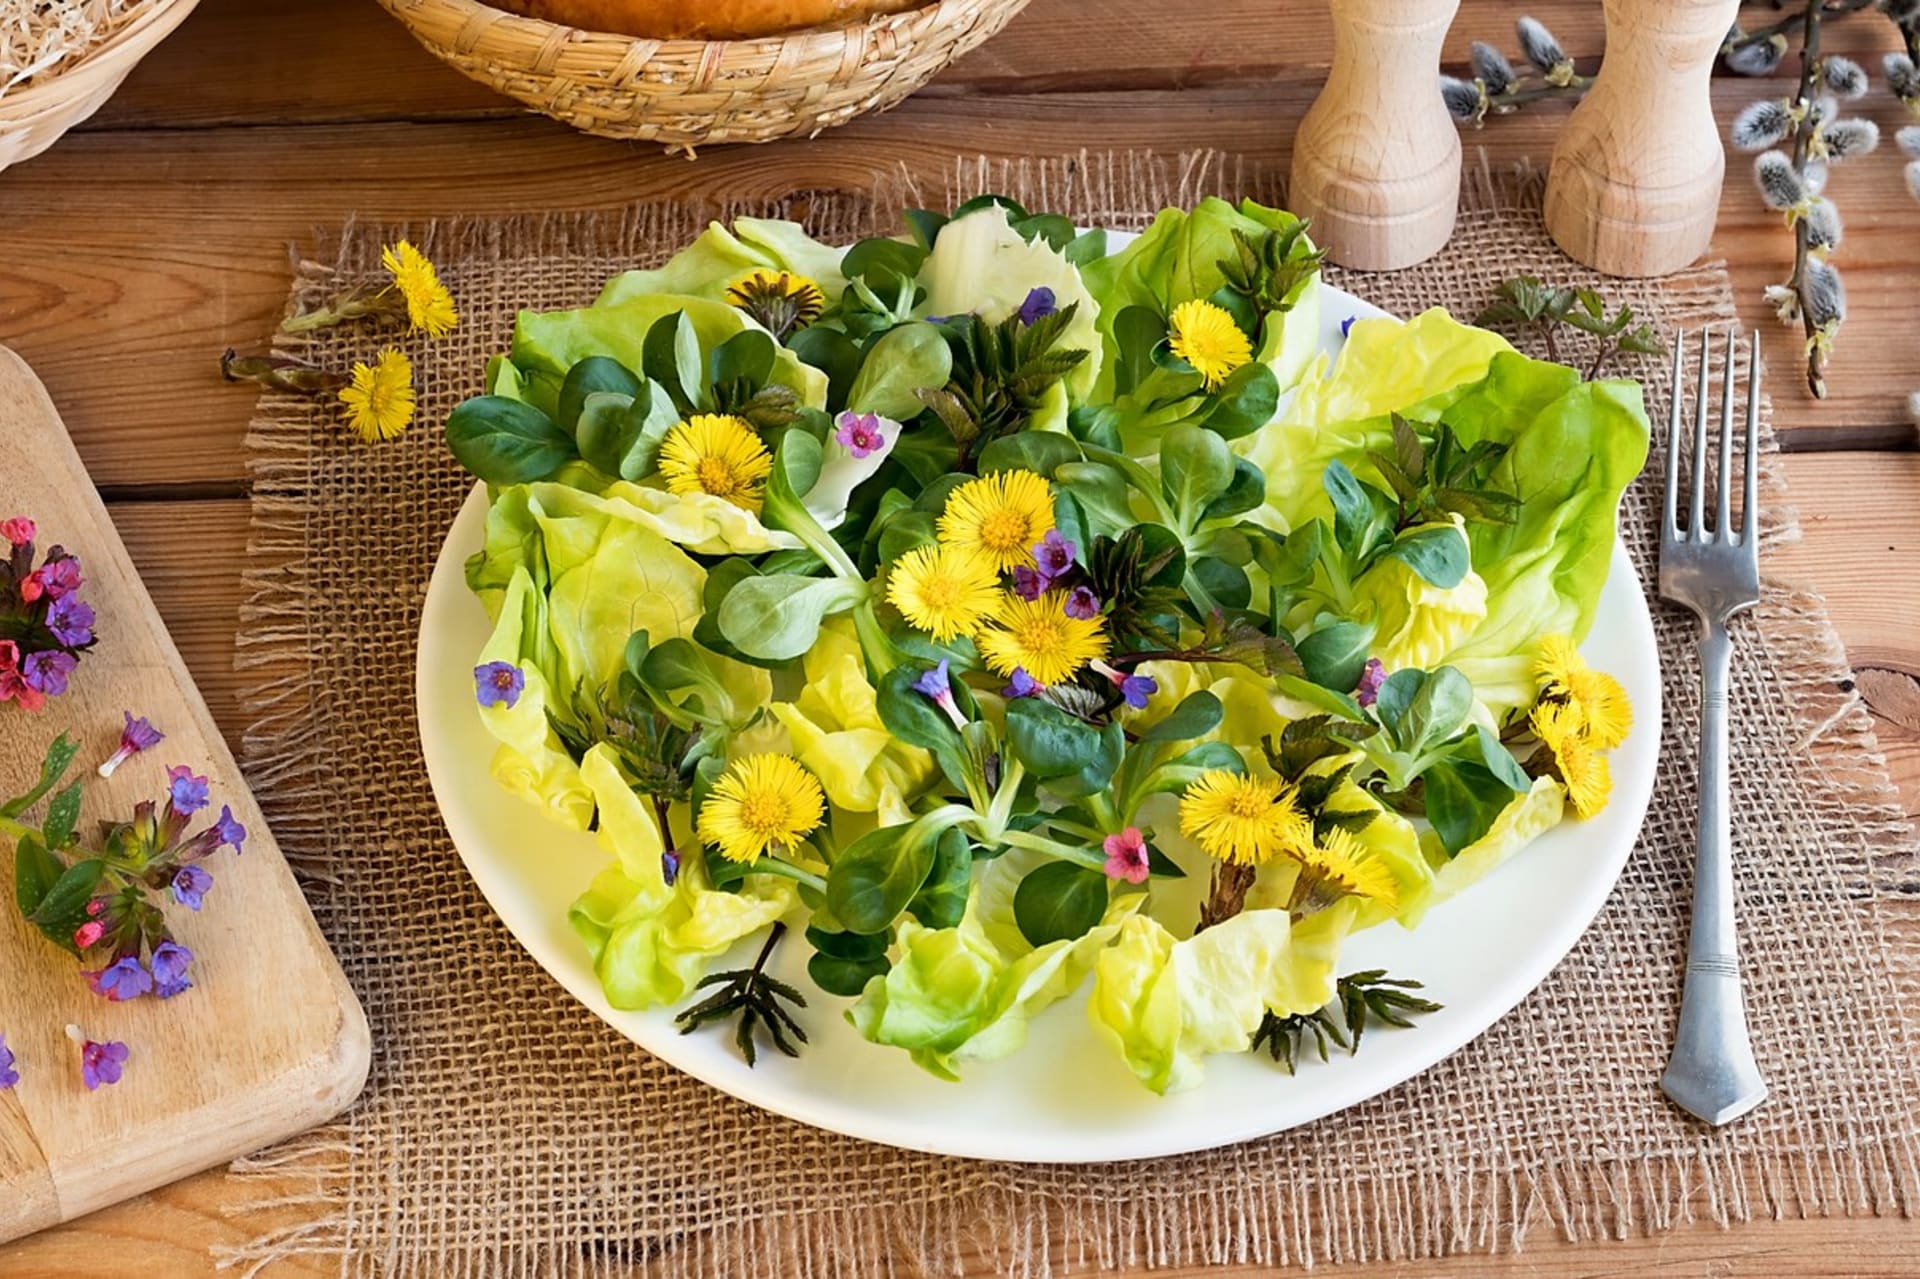 Mladé a křehké lístky plicníku jsou báječnou ingrediencí a ozvláštněním prvních jarních salátů, nasekaná nať se hodí na uvařené brambory, do polévek i pomazánek.